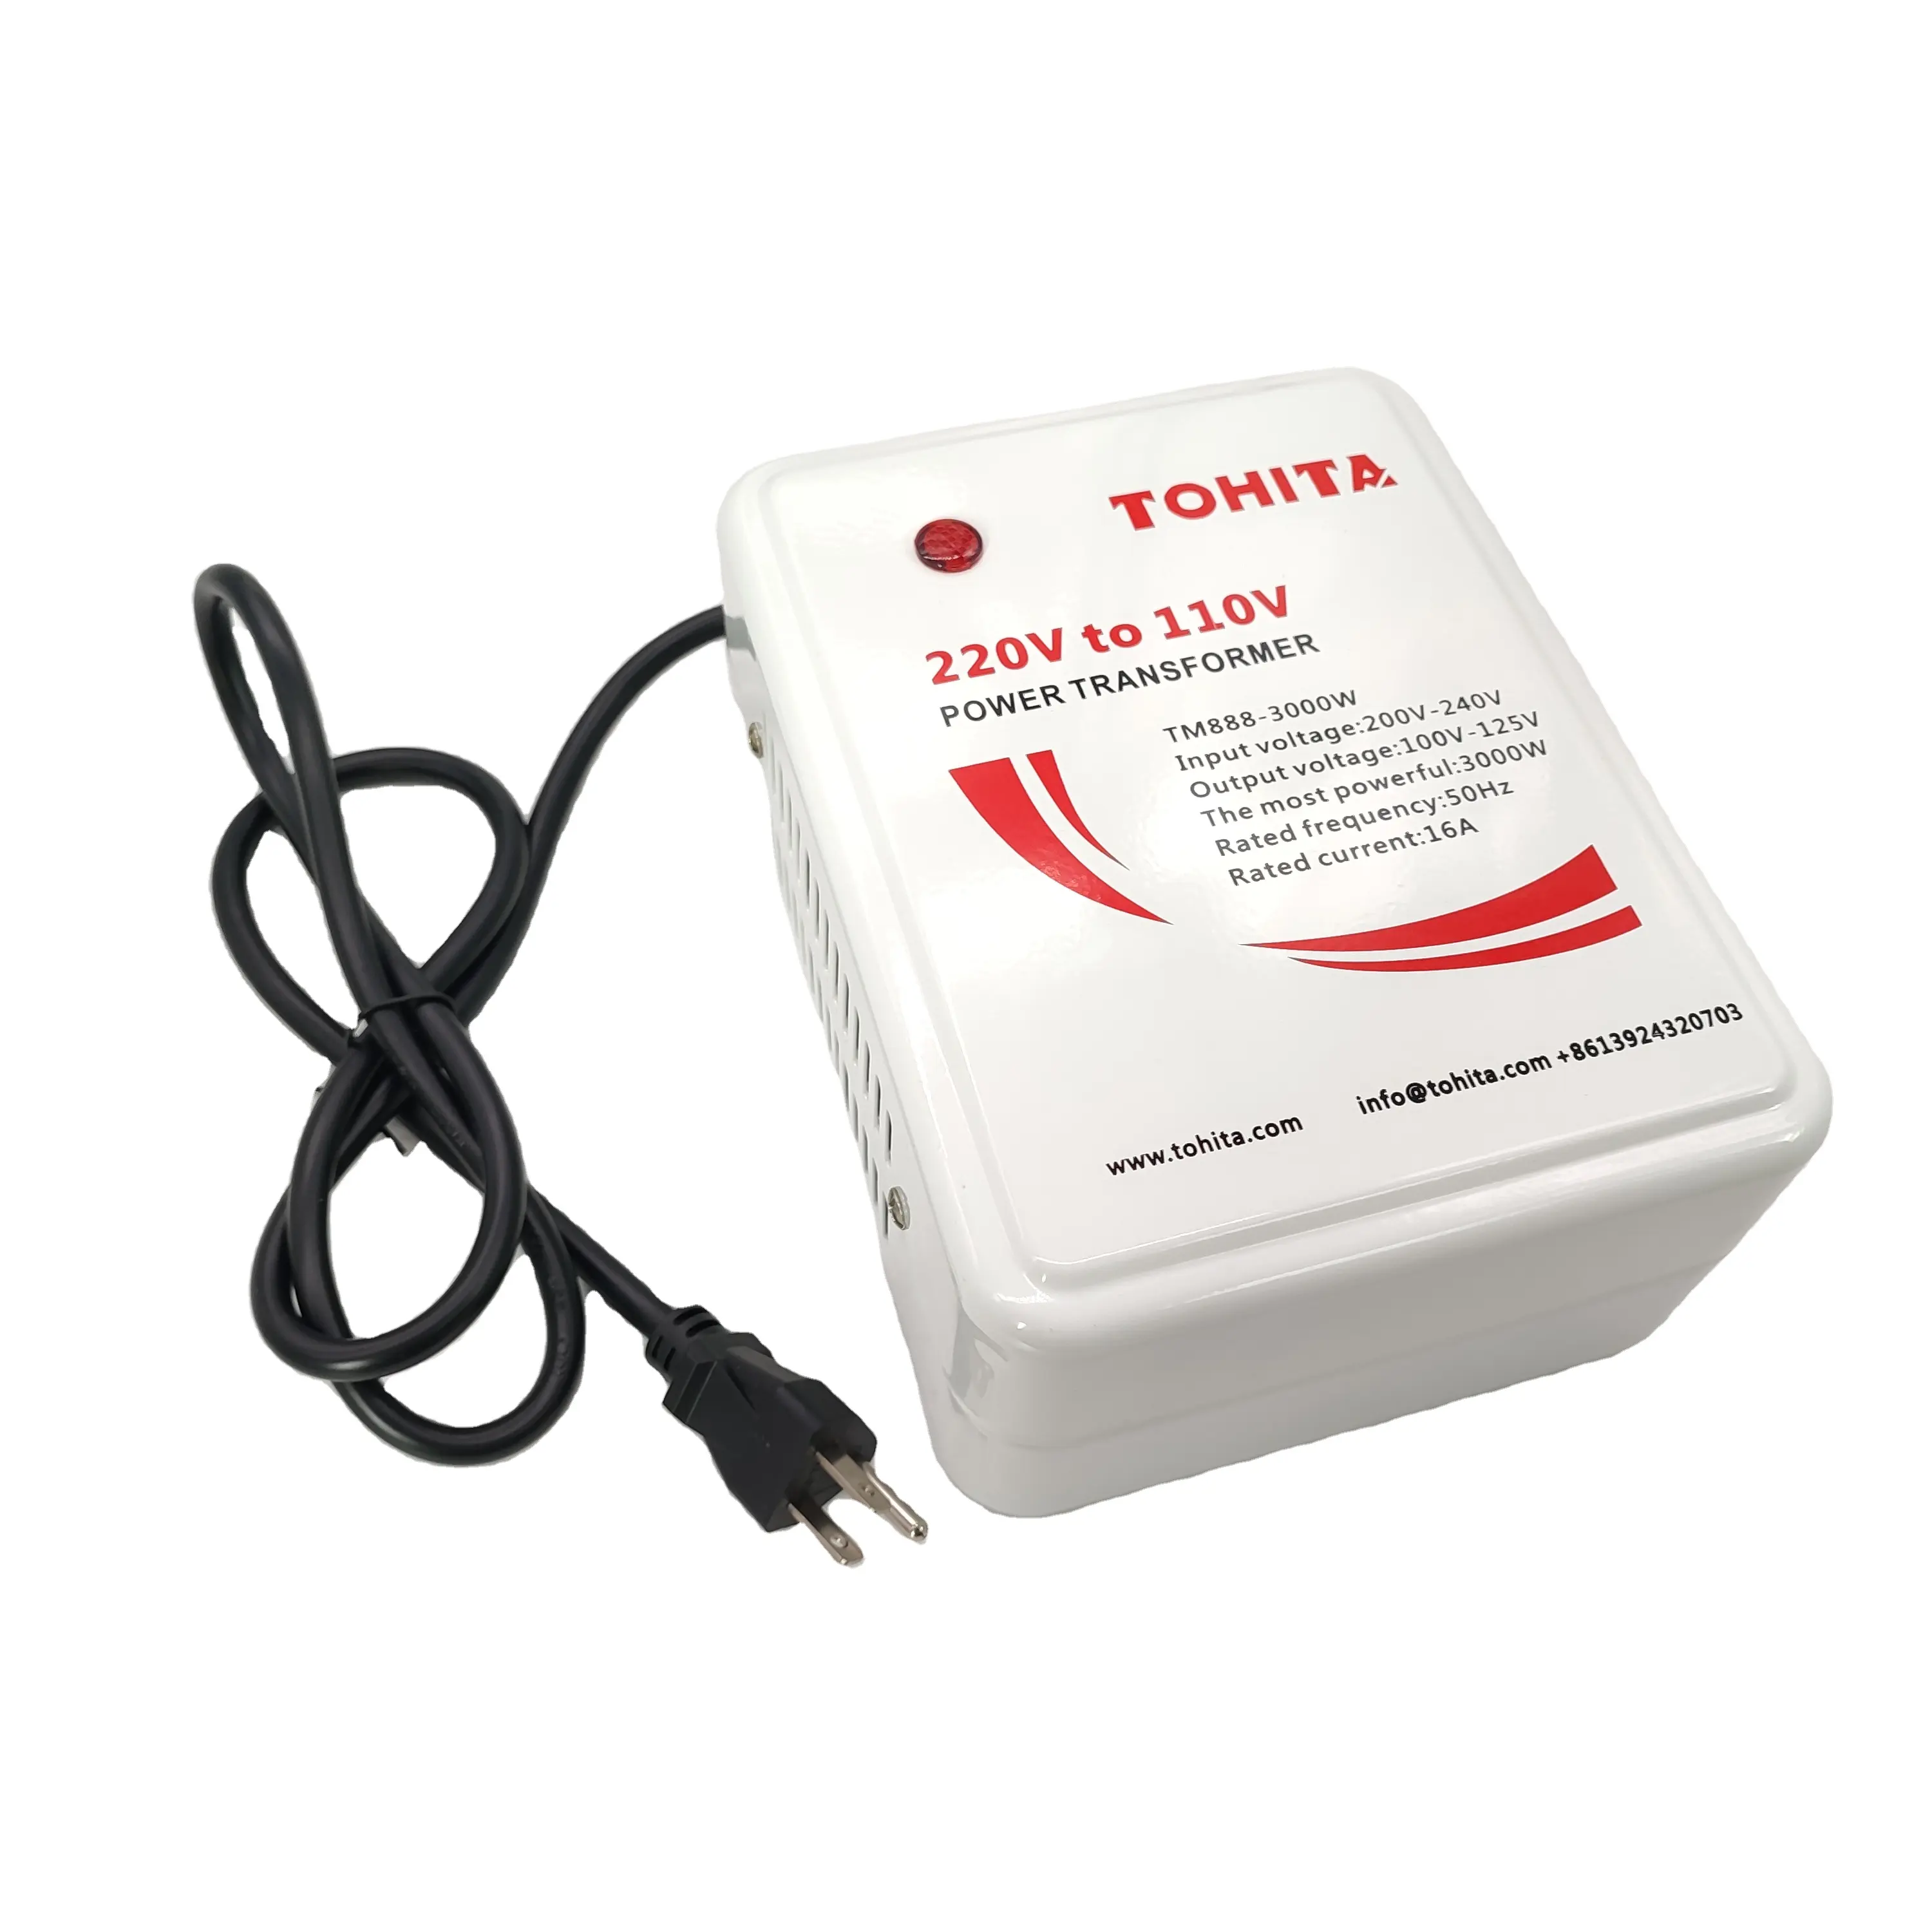 TOHITA-transformador de potencia de TM888-3000W, convertidor de voltaje de 200V a 110V, 110va, superventas, impresoras copiadoras